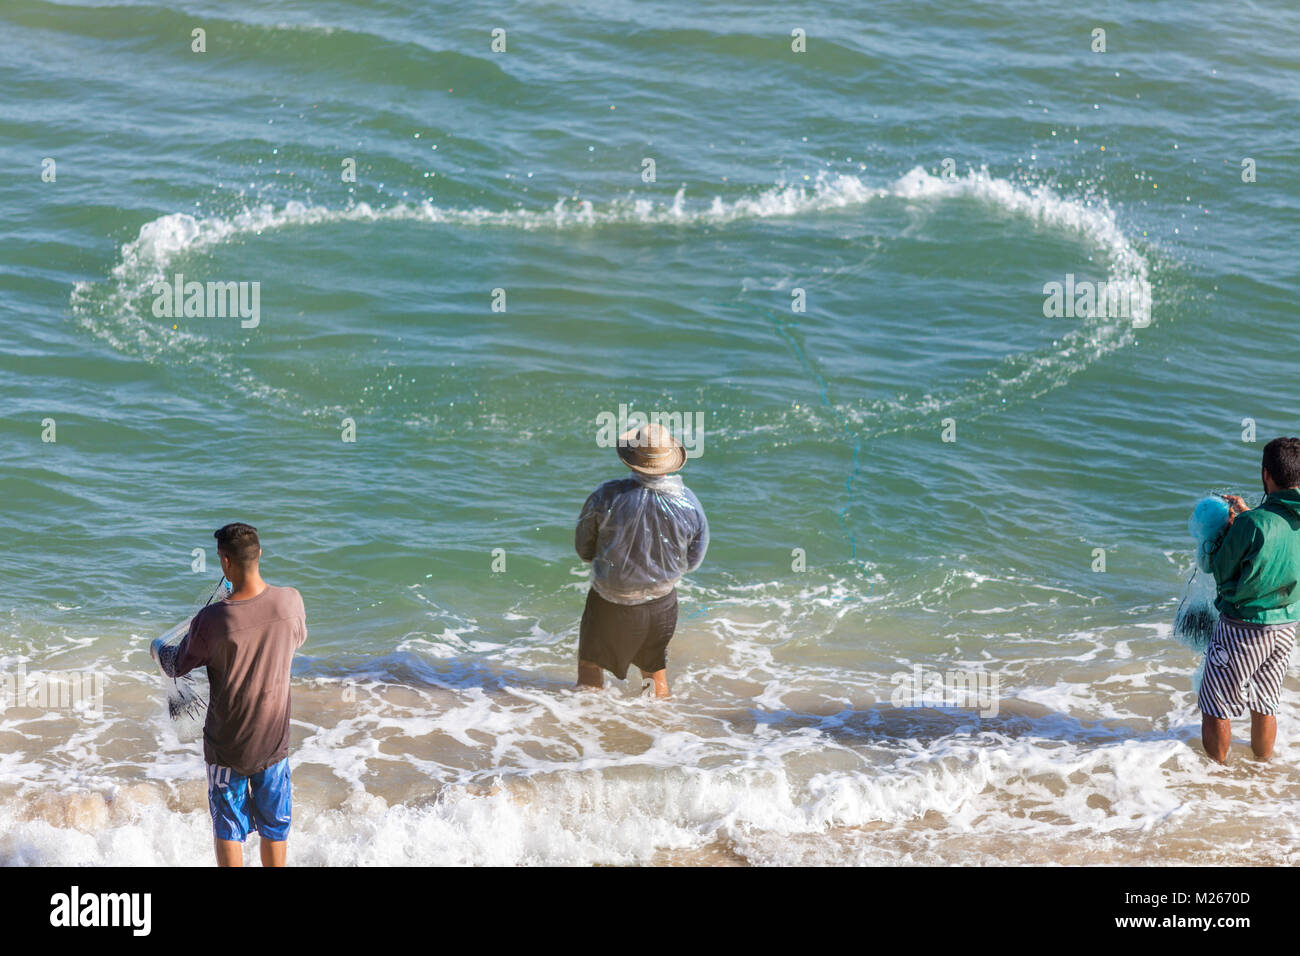 The Fishermen in South Brazil Stock Photo